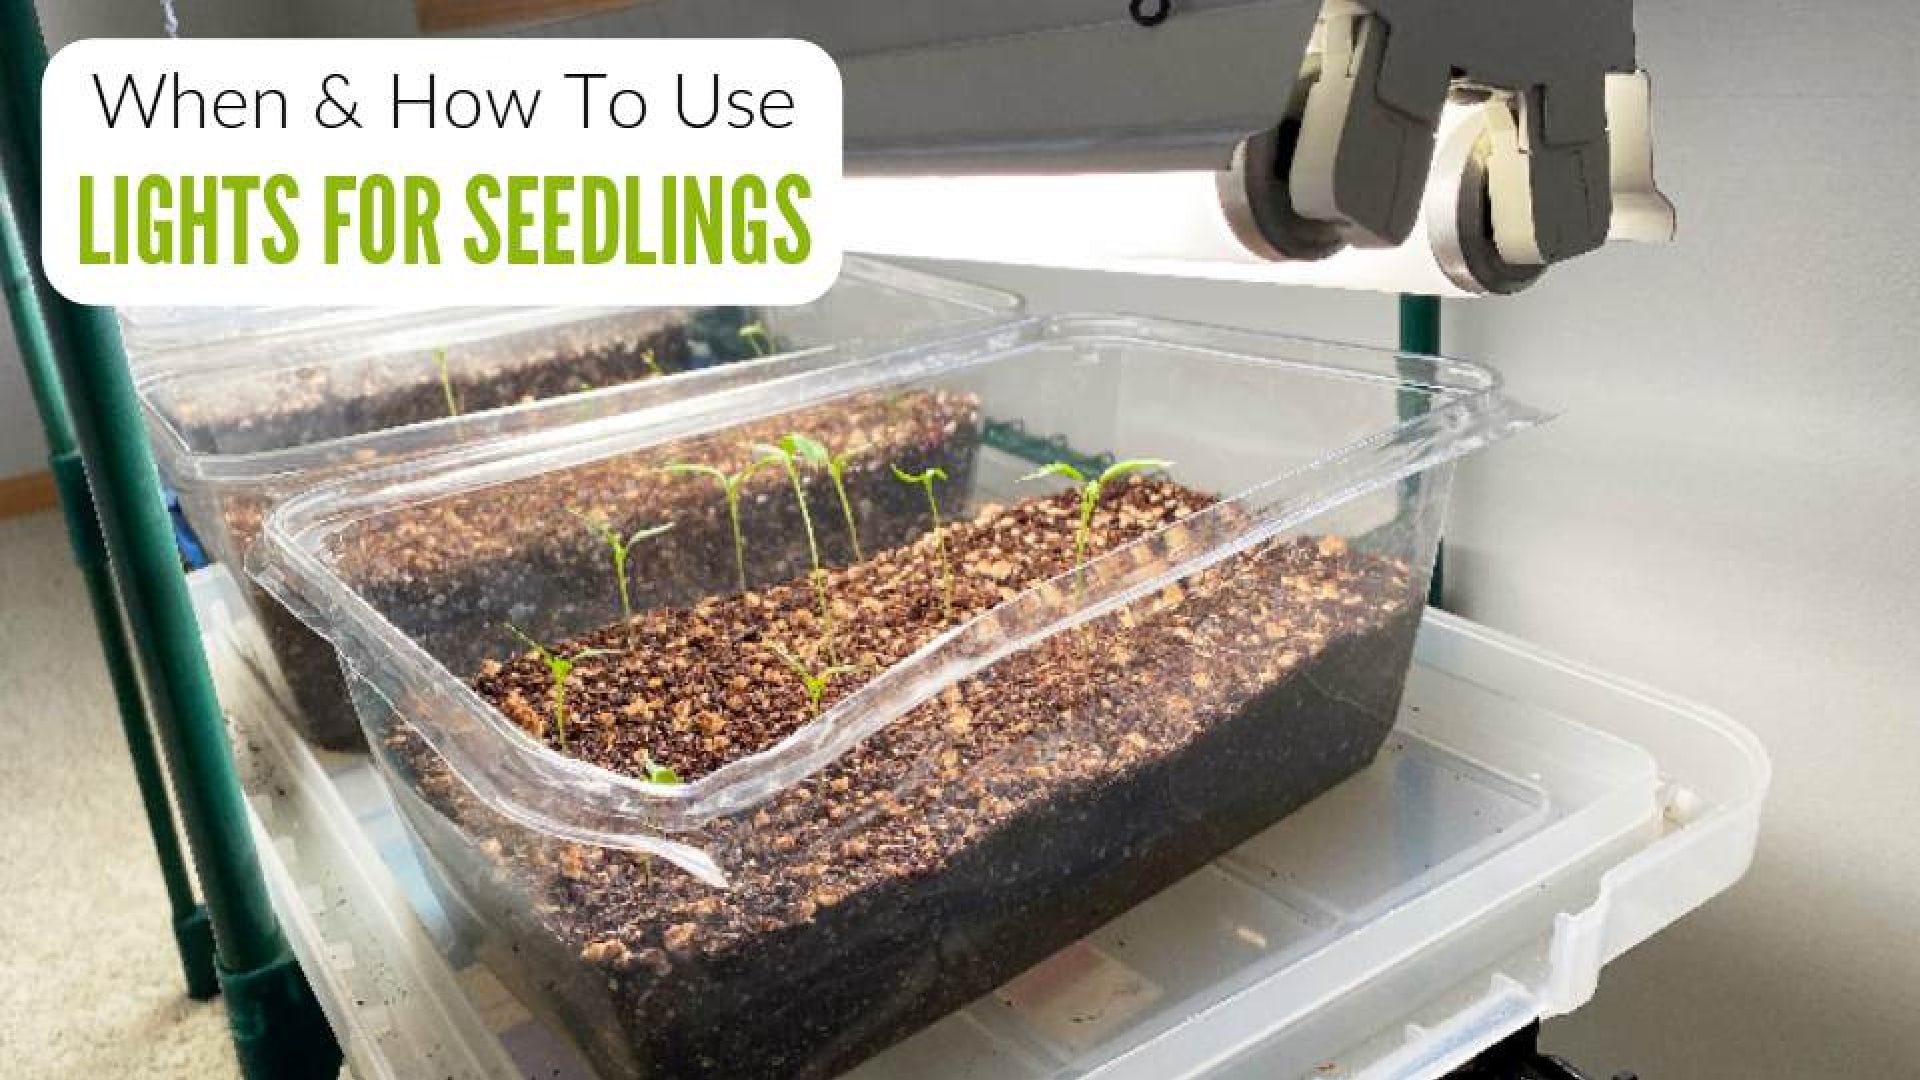 Lighting Seedlings: A Beginner's Guide To Grow Lights For Seedlings